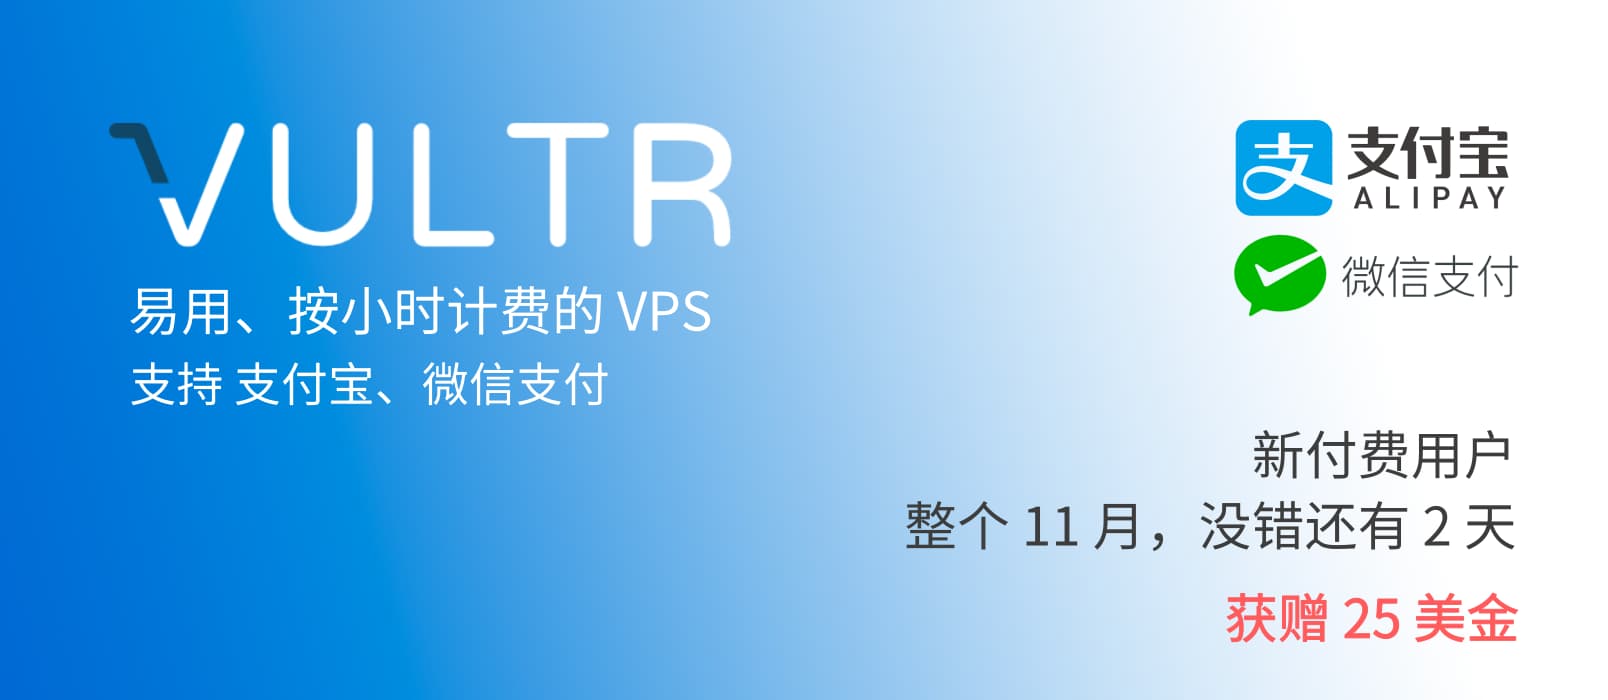 著名 VPS 提供商 Vultr 已支持支付宝、微信支付 1